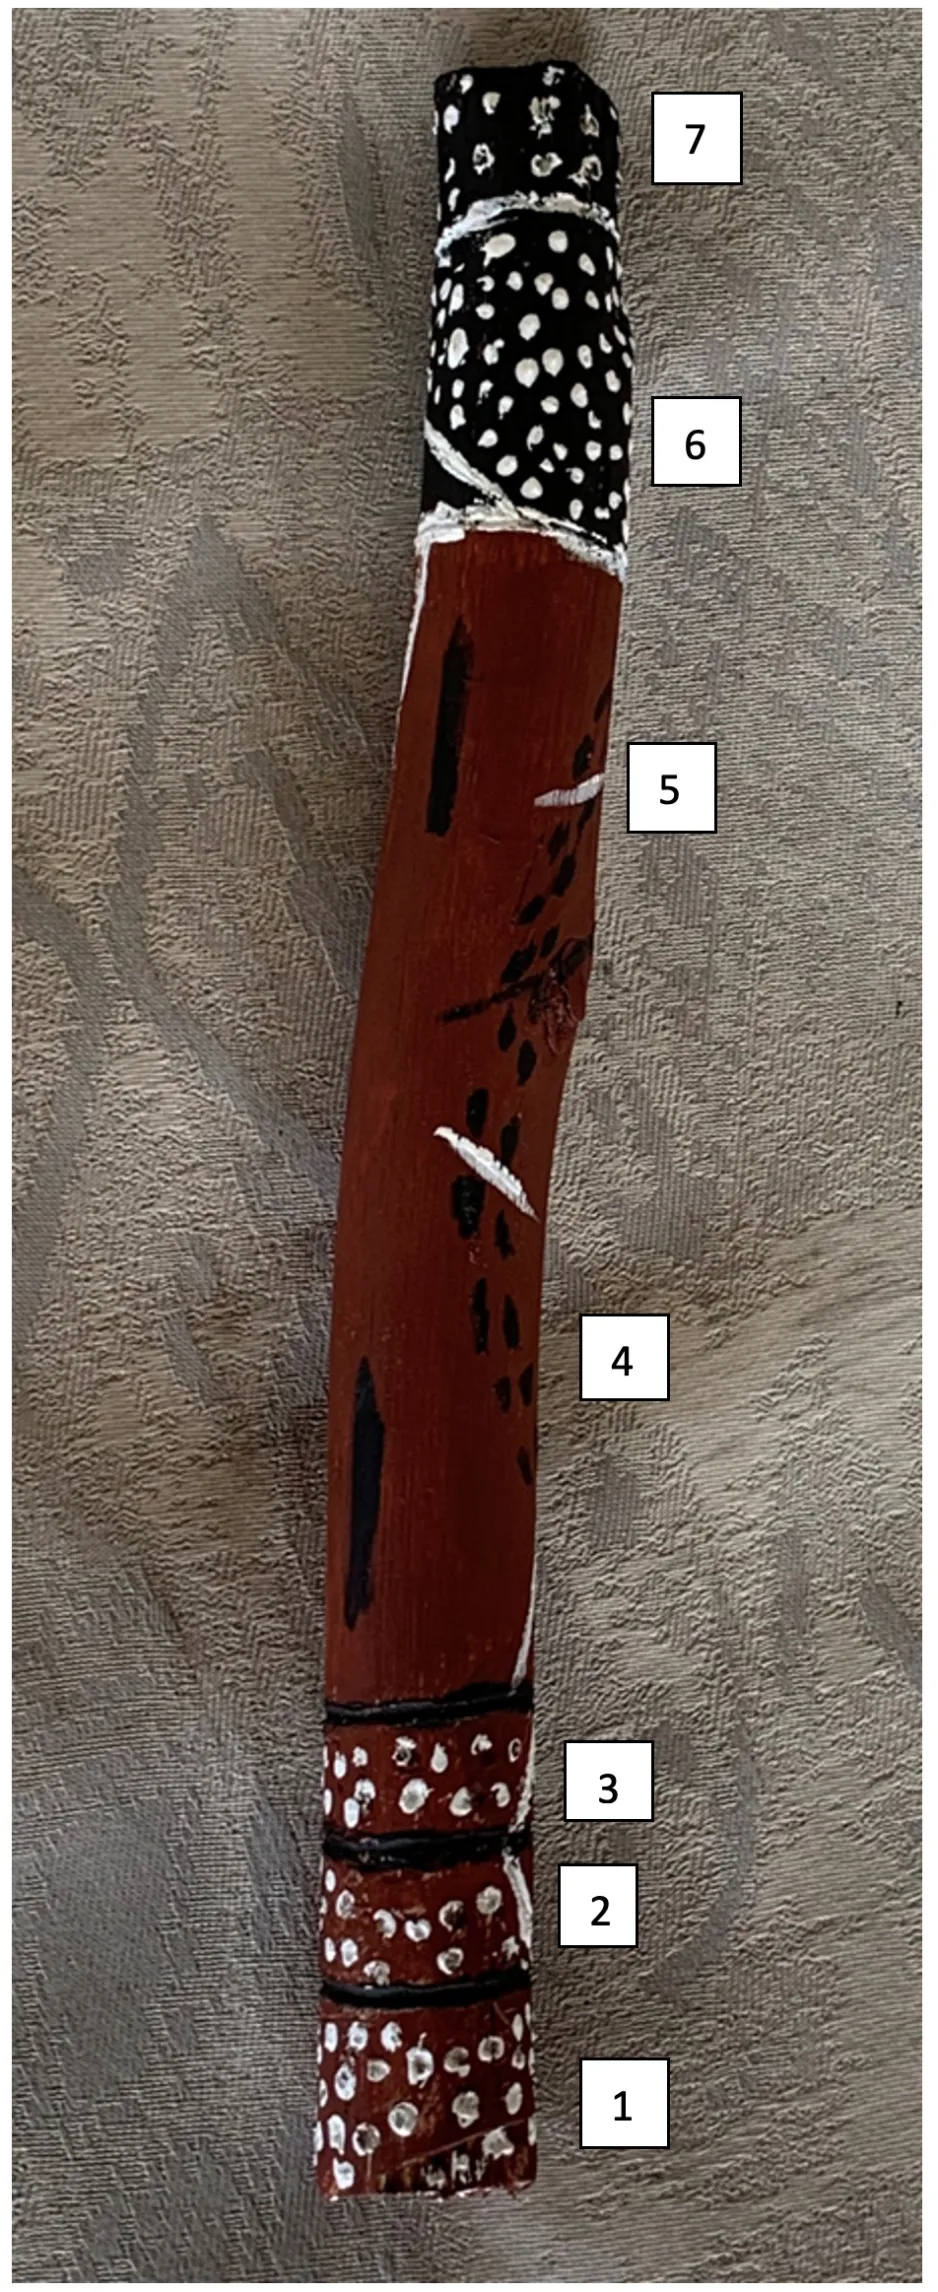 Un bâton utilisé dans des cérémonies, peint en brun et portant des motifs blancs et noirs.